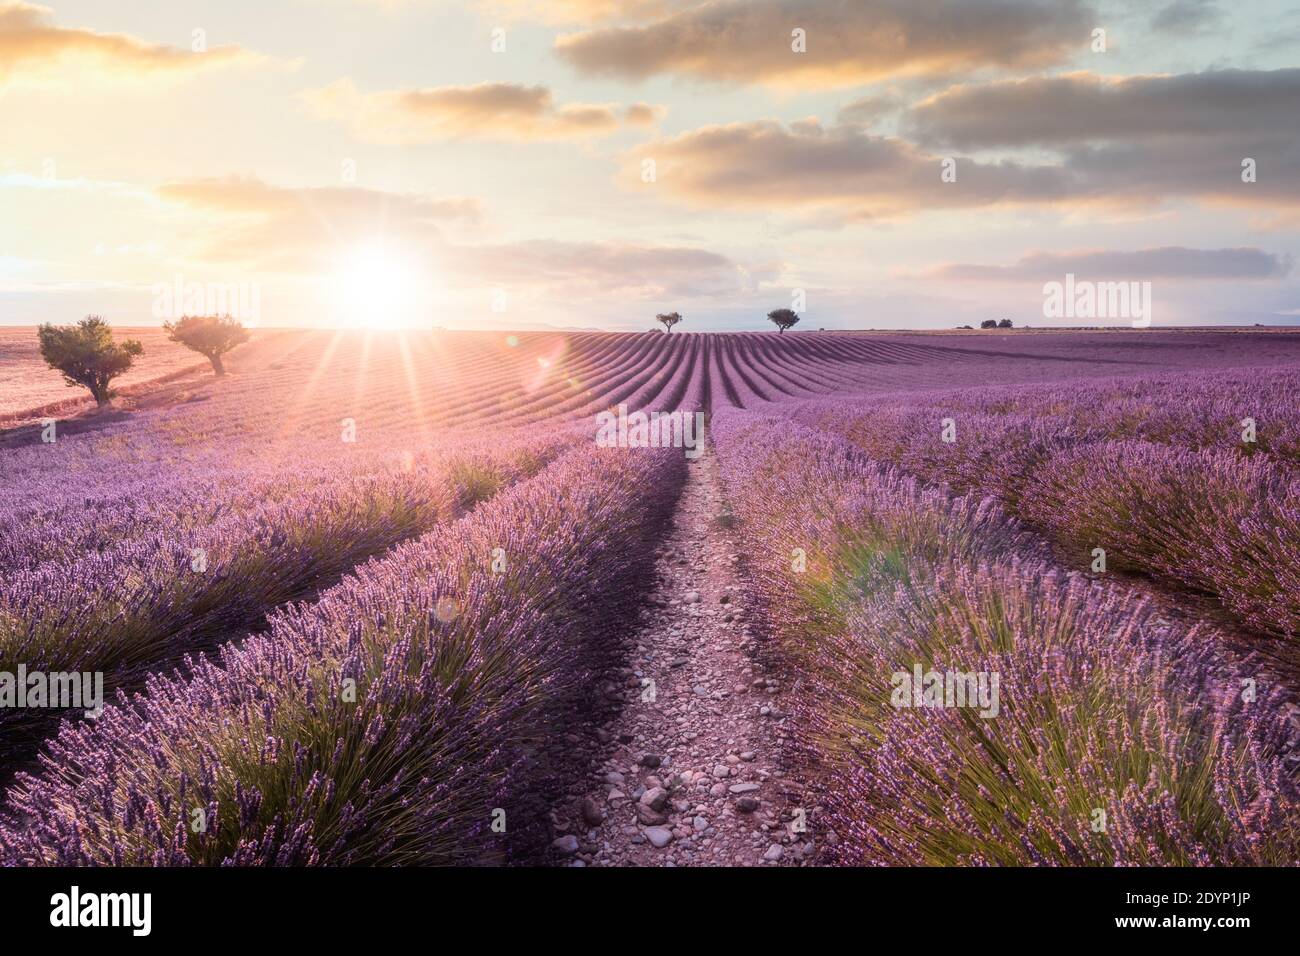 Parfum de violet, champ de lavande au coucher du soleil. Provence, Valensole, France Banque D'Images